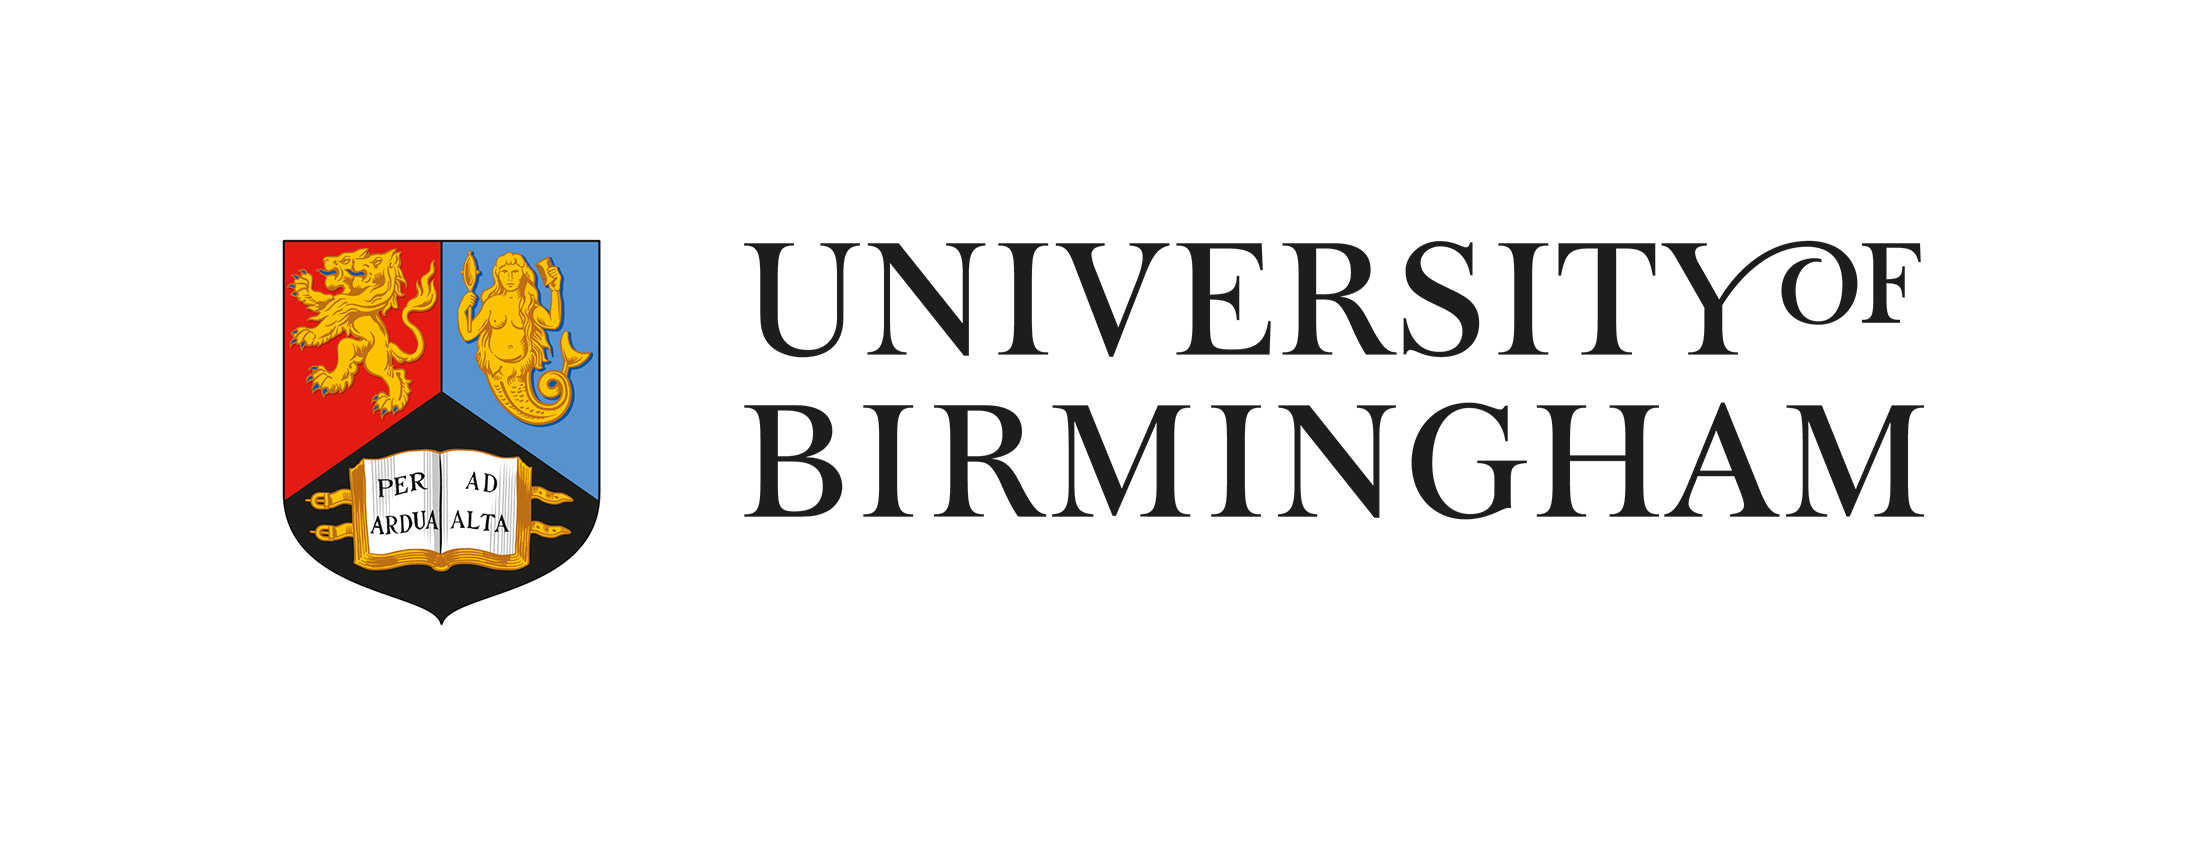 university-of-birmingham